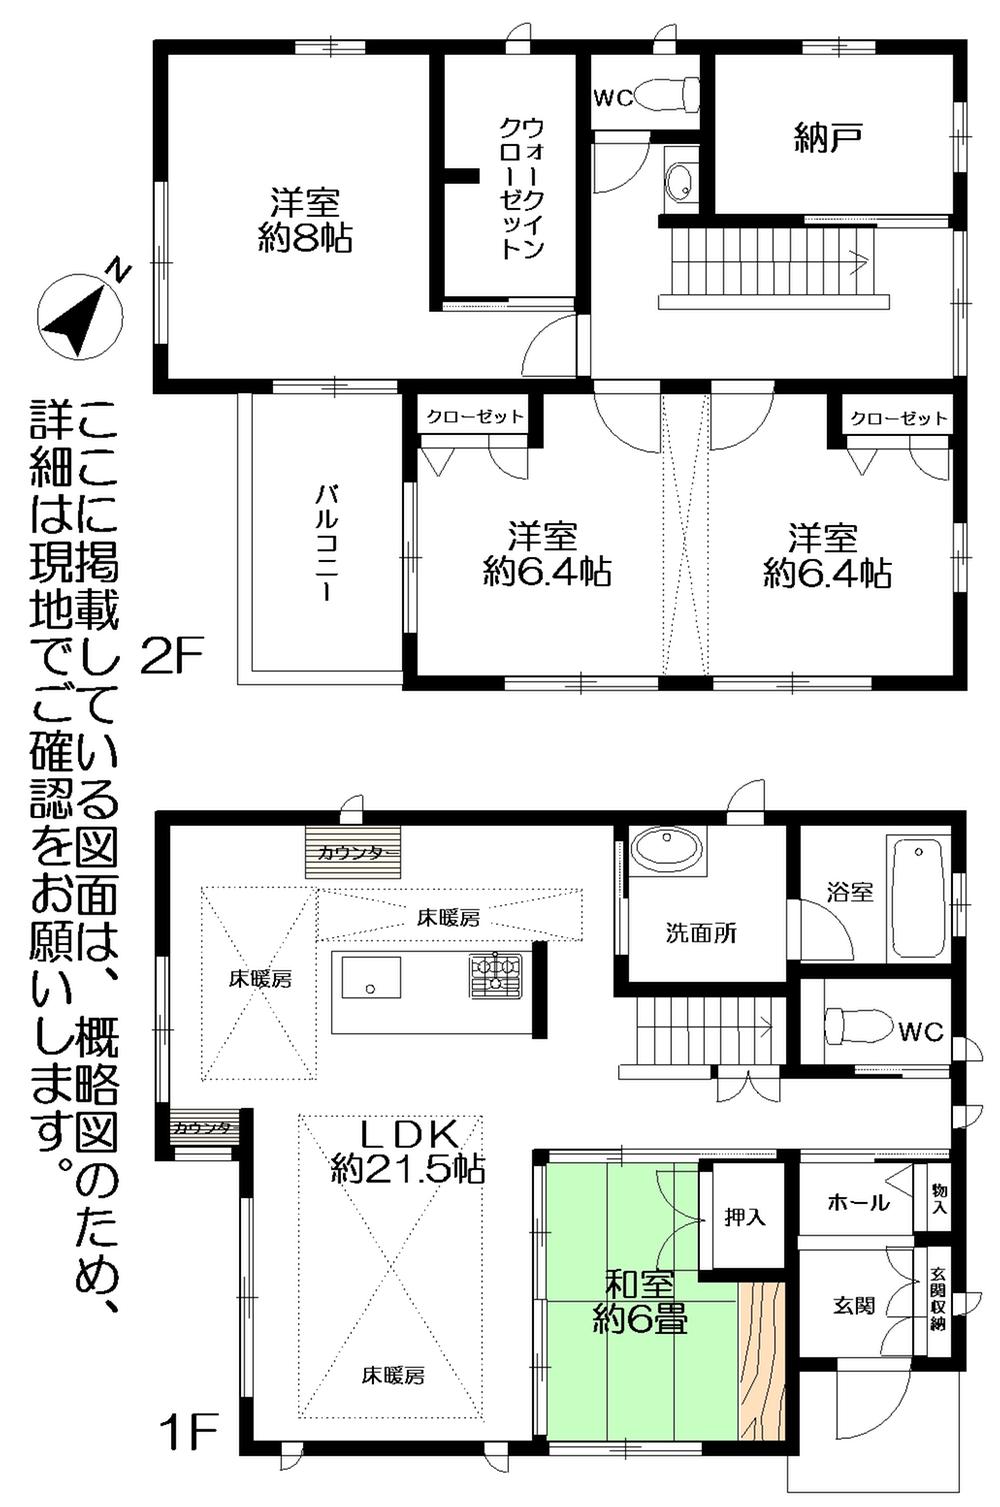 Floor plan. 39,800,000 yen, 4LDK + S (storeroom), Land area 283.02 sq m , Building area 126.5 sq m